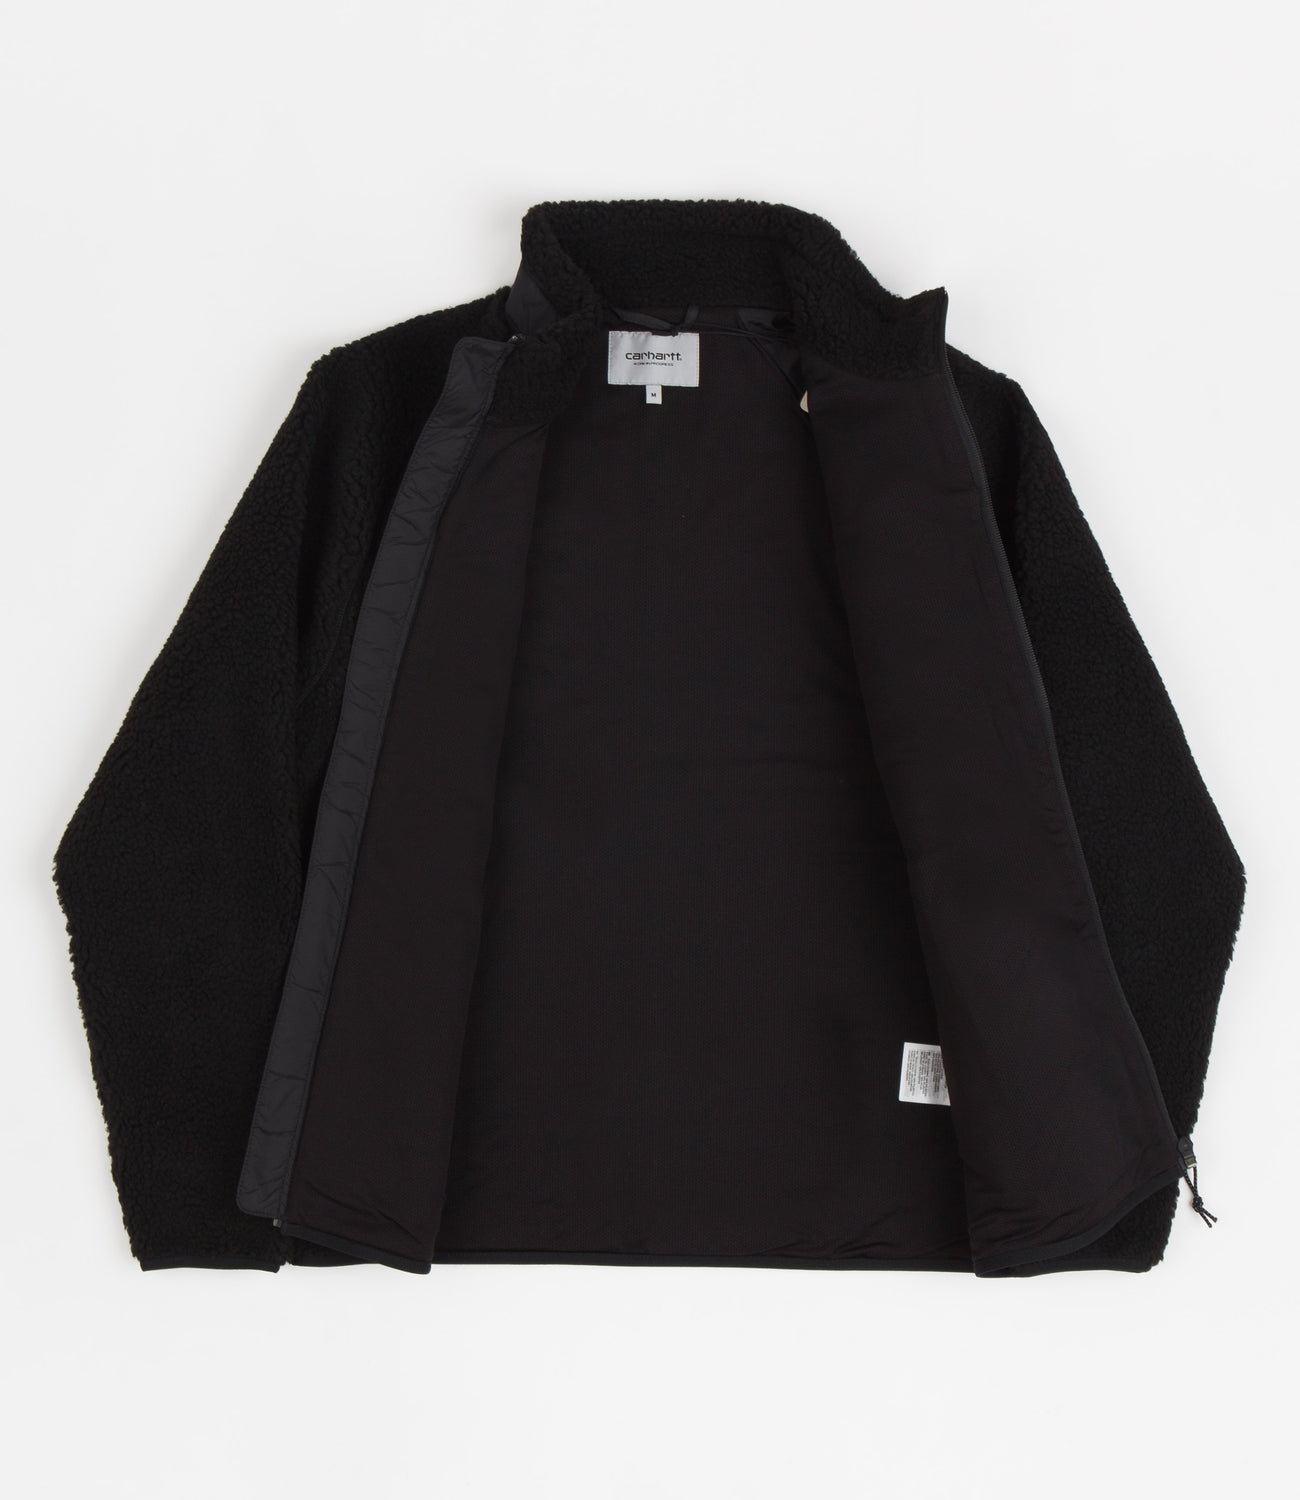 Carhartt Prentis Liner Jacket - Black / Black | Flatspot